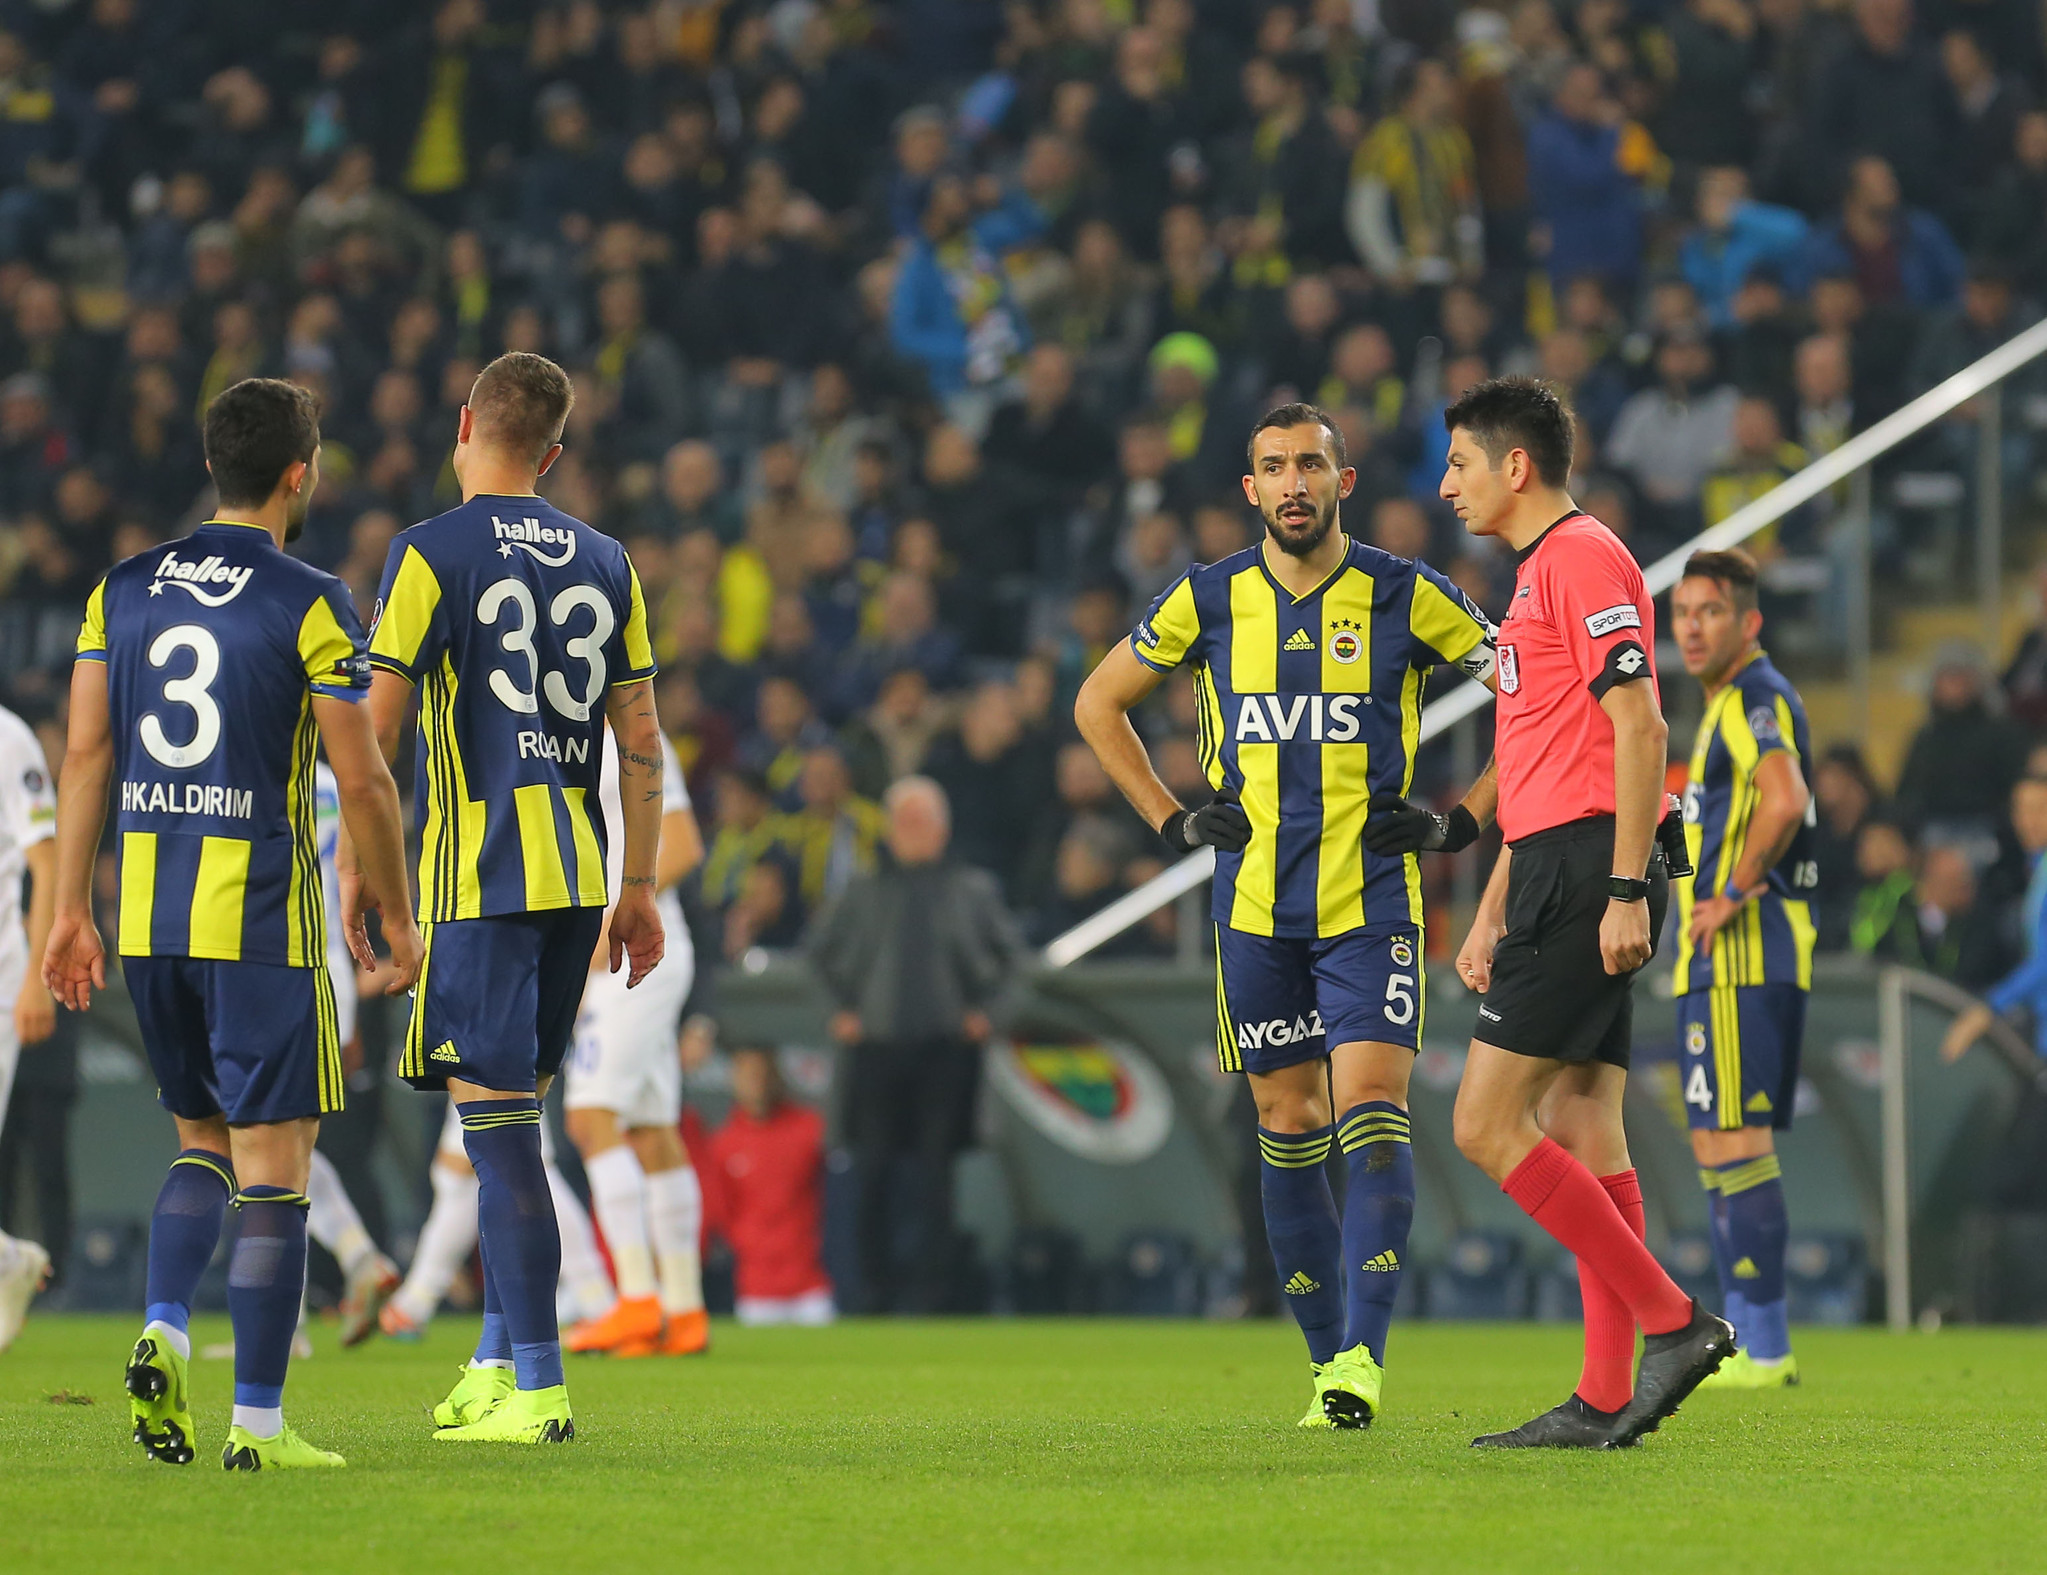 Fenerbahçe - Kasımpaşa maçının hakem raporu